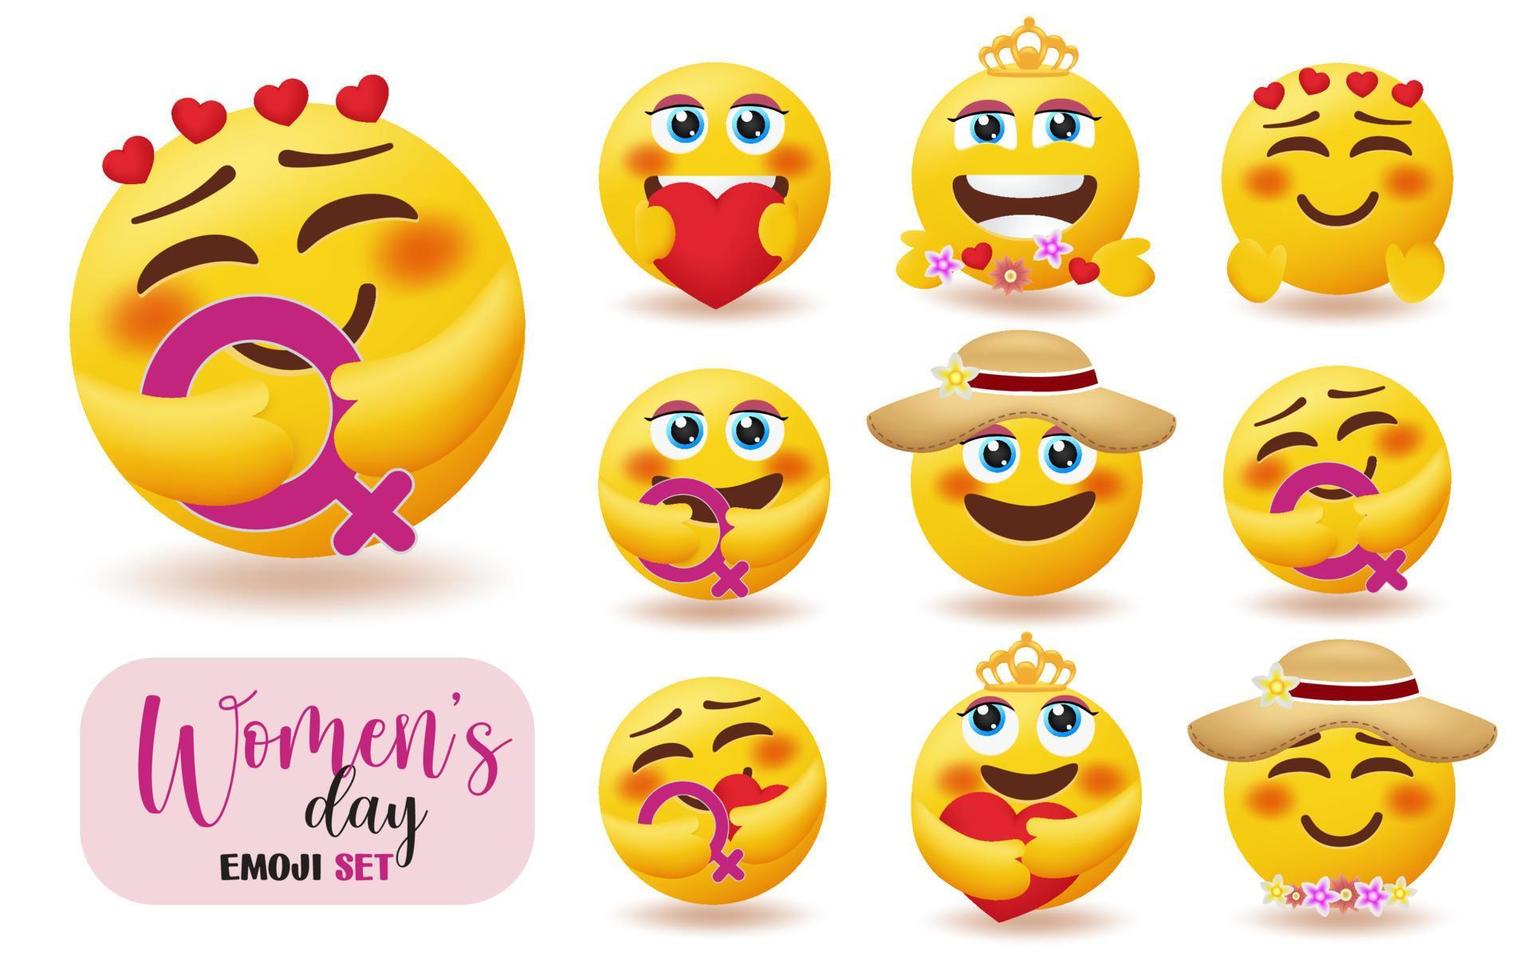 vrouwen emoji tekens vector set. vrouwendag emoticon collectie met meisjeskarakter met vrouwelijk symbool voor vrouw en moeders viering ontwerp. vectorillustratie.